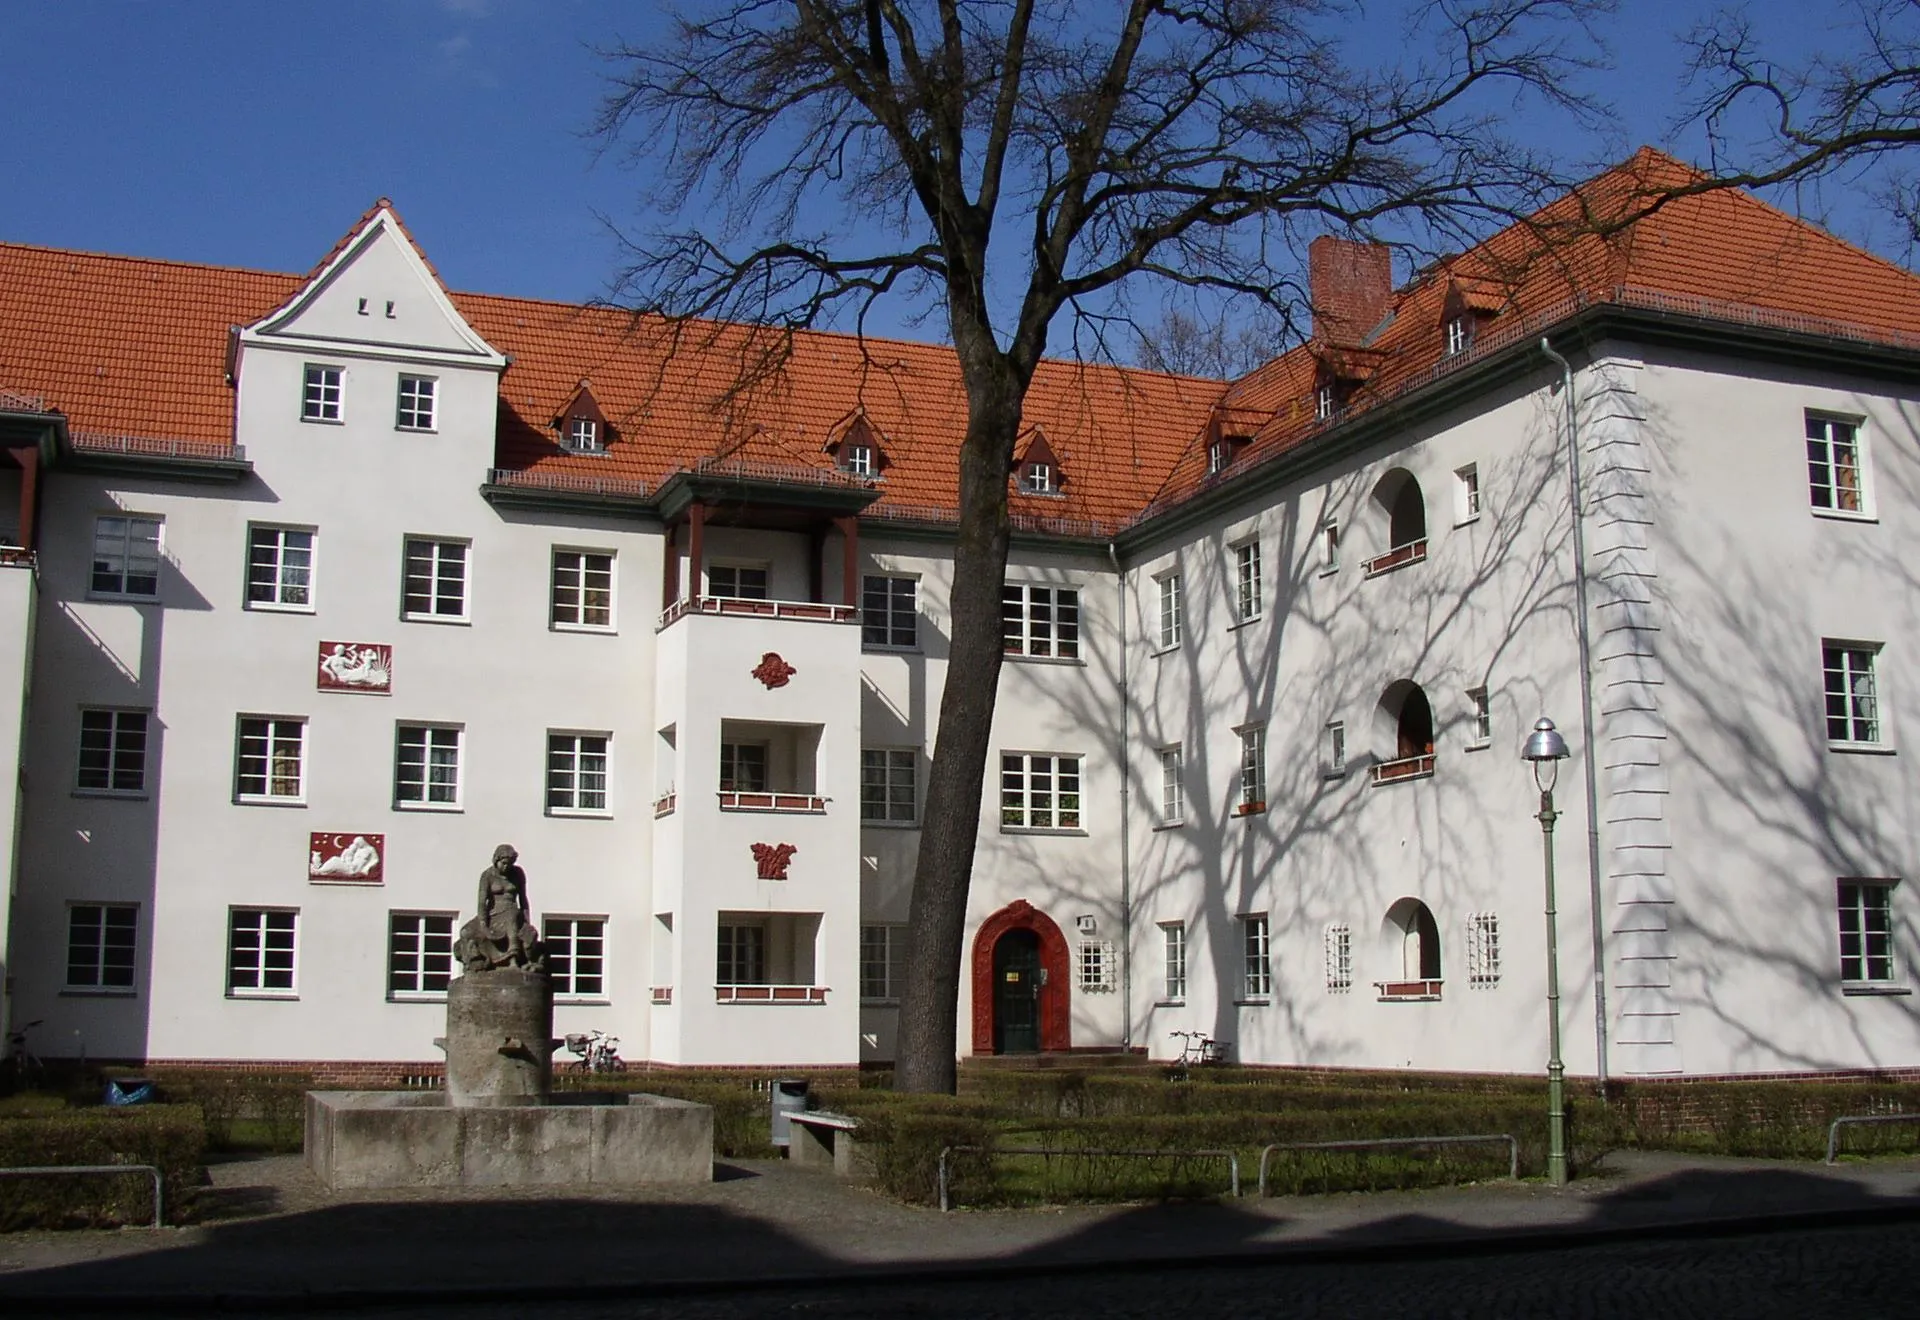 Image of Siemensstadt